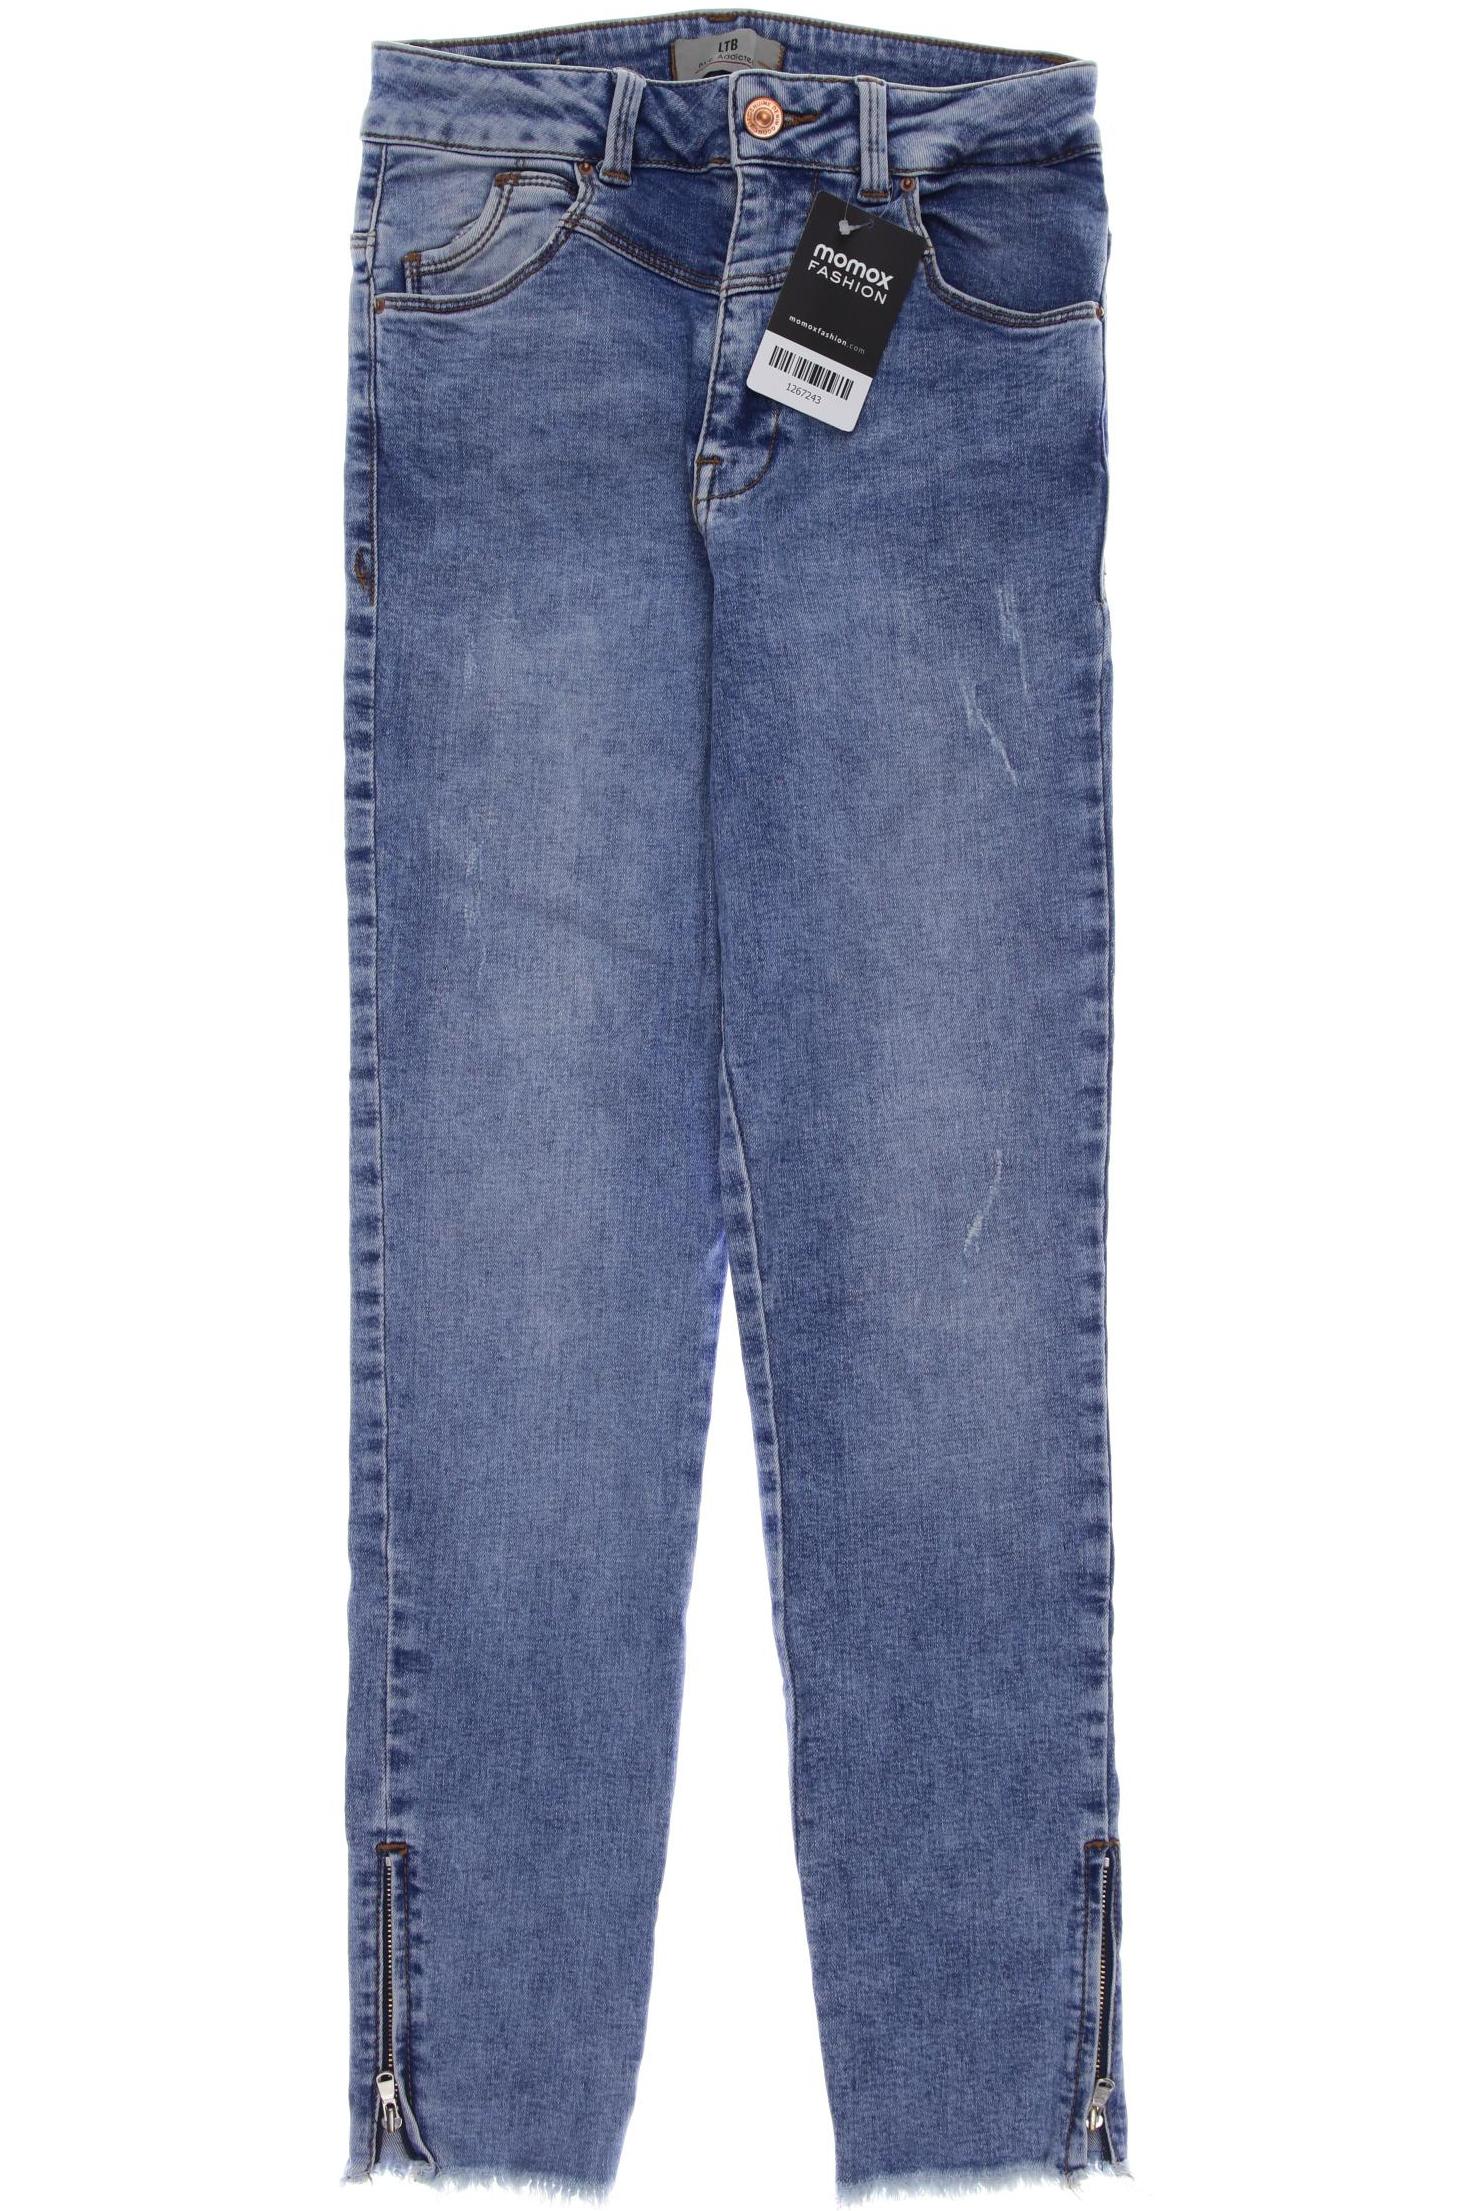 LTB Damen Jeans, blau, Gr. 36 von LTB